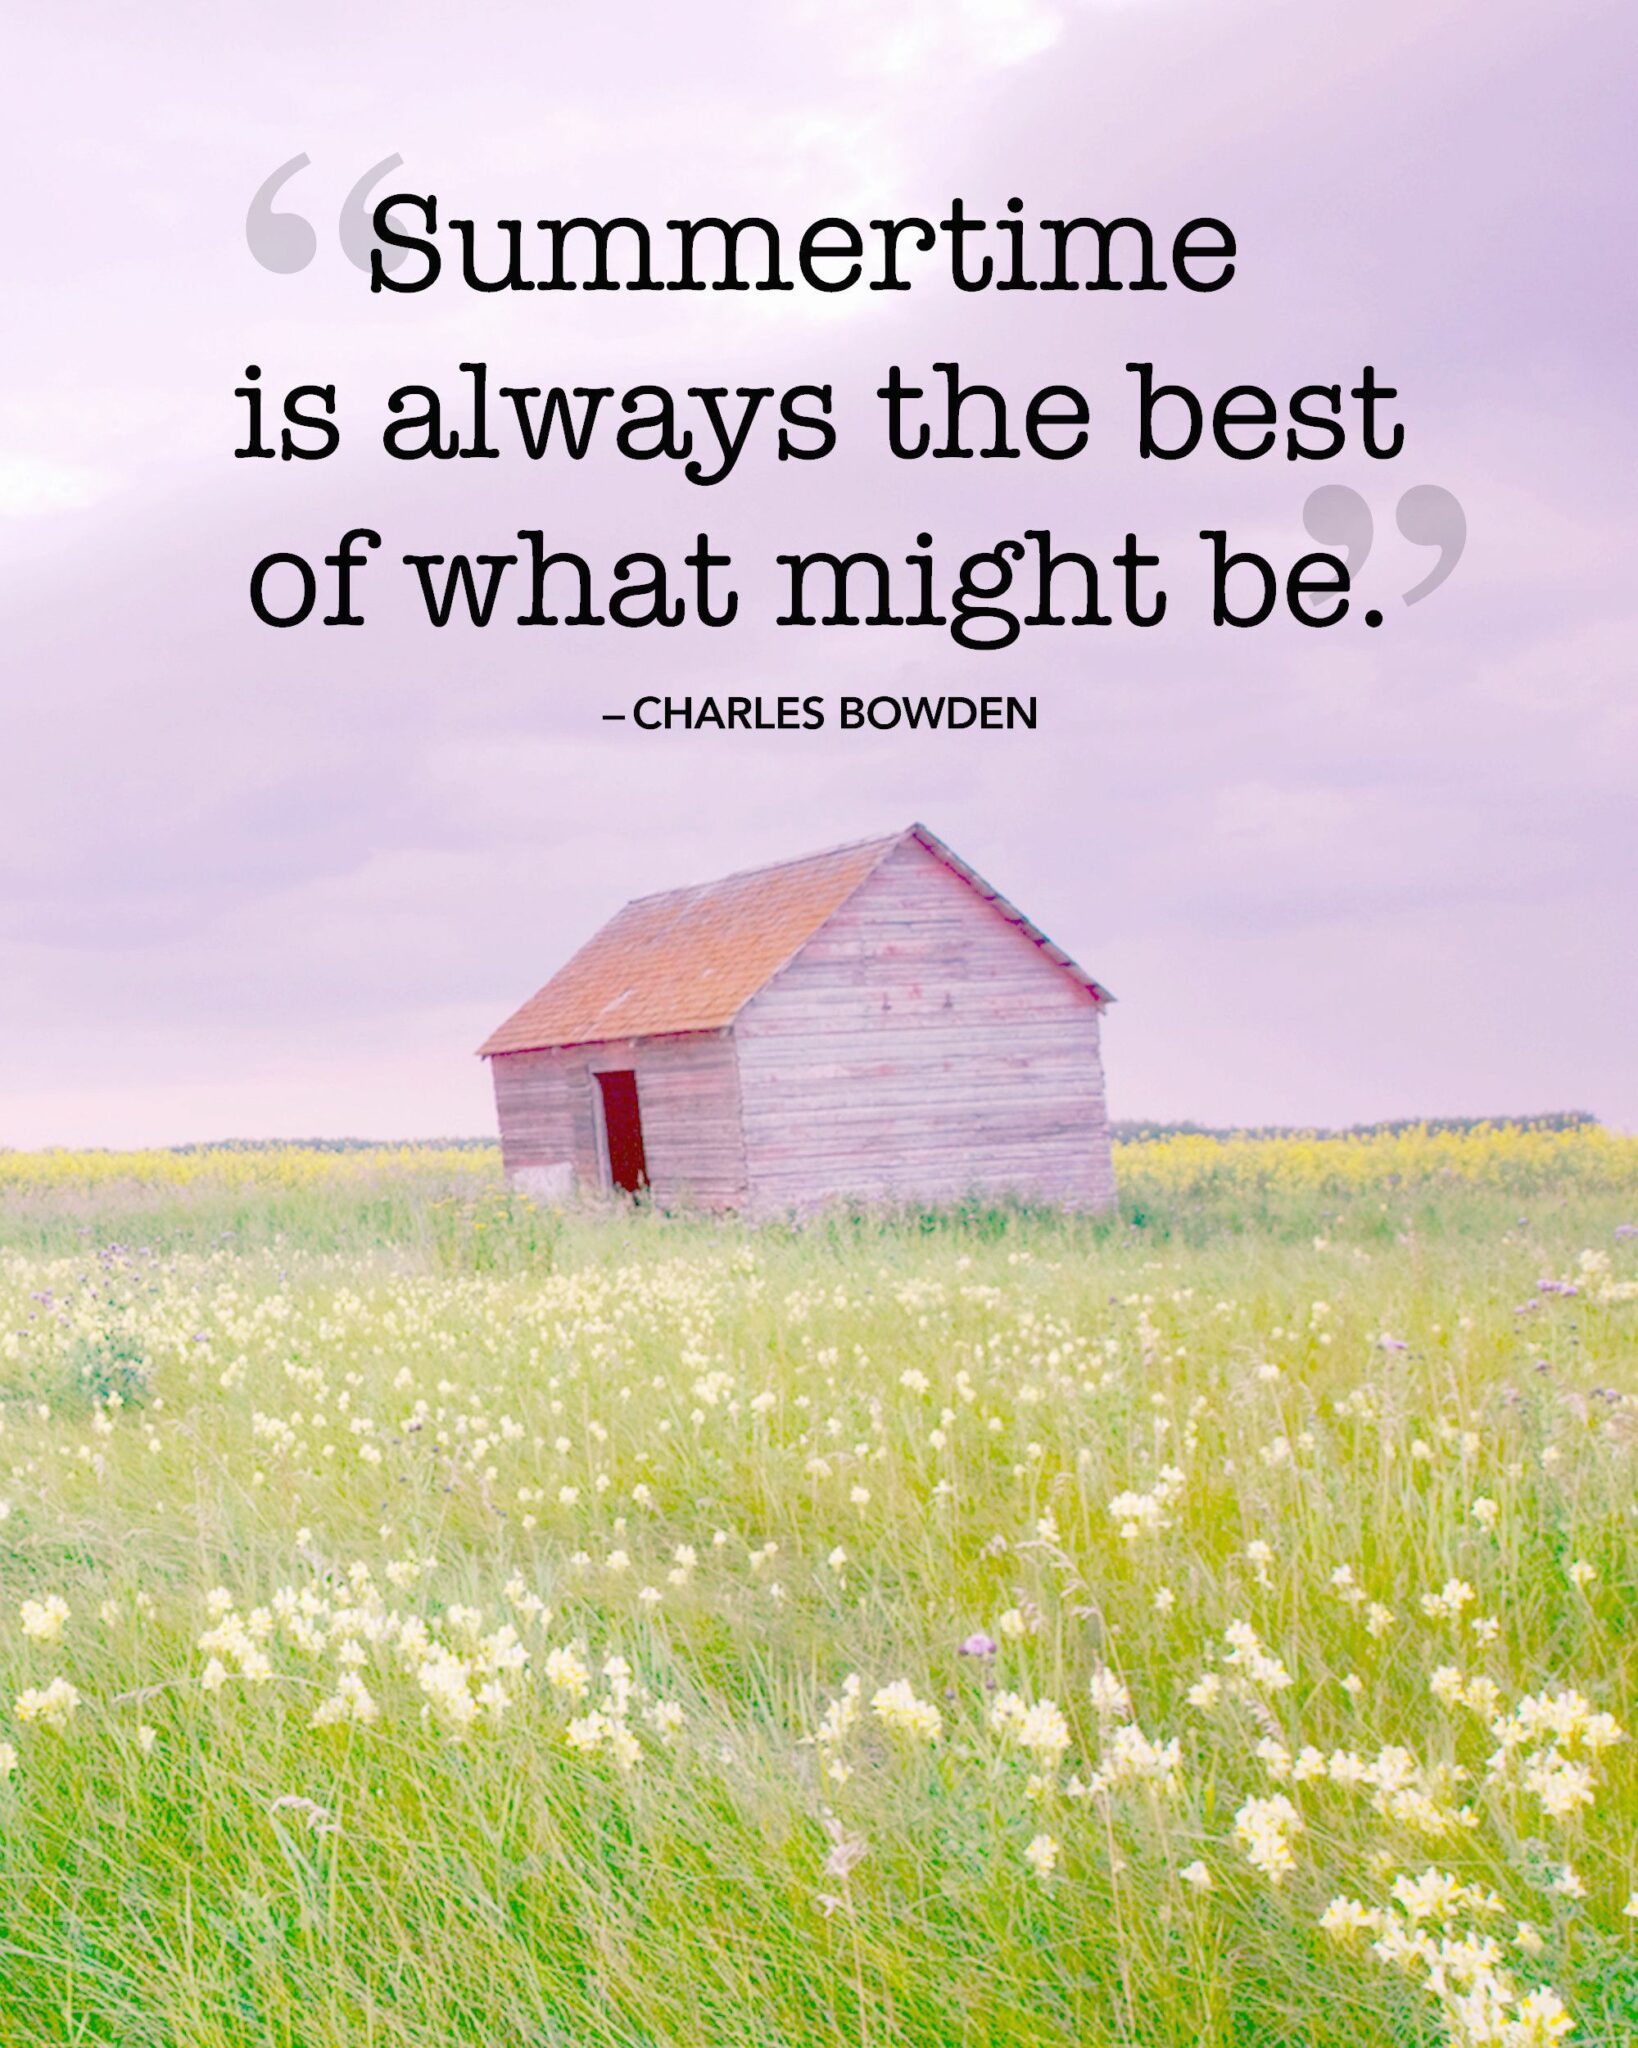 Summertime Quotes - ShortQuotes.cc